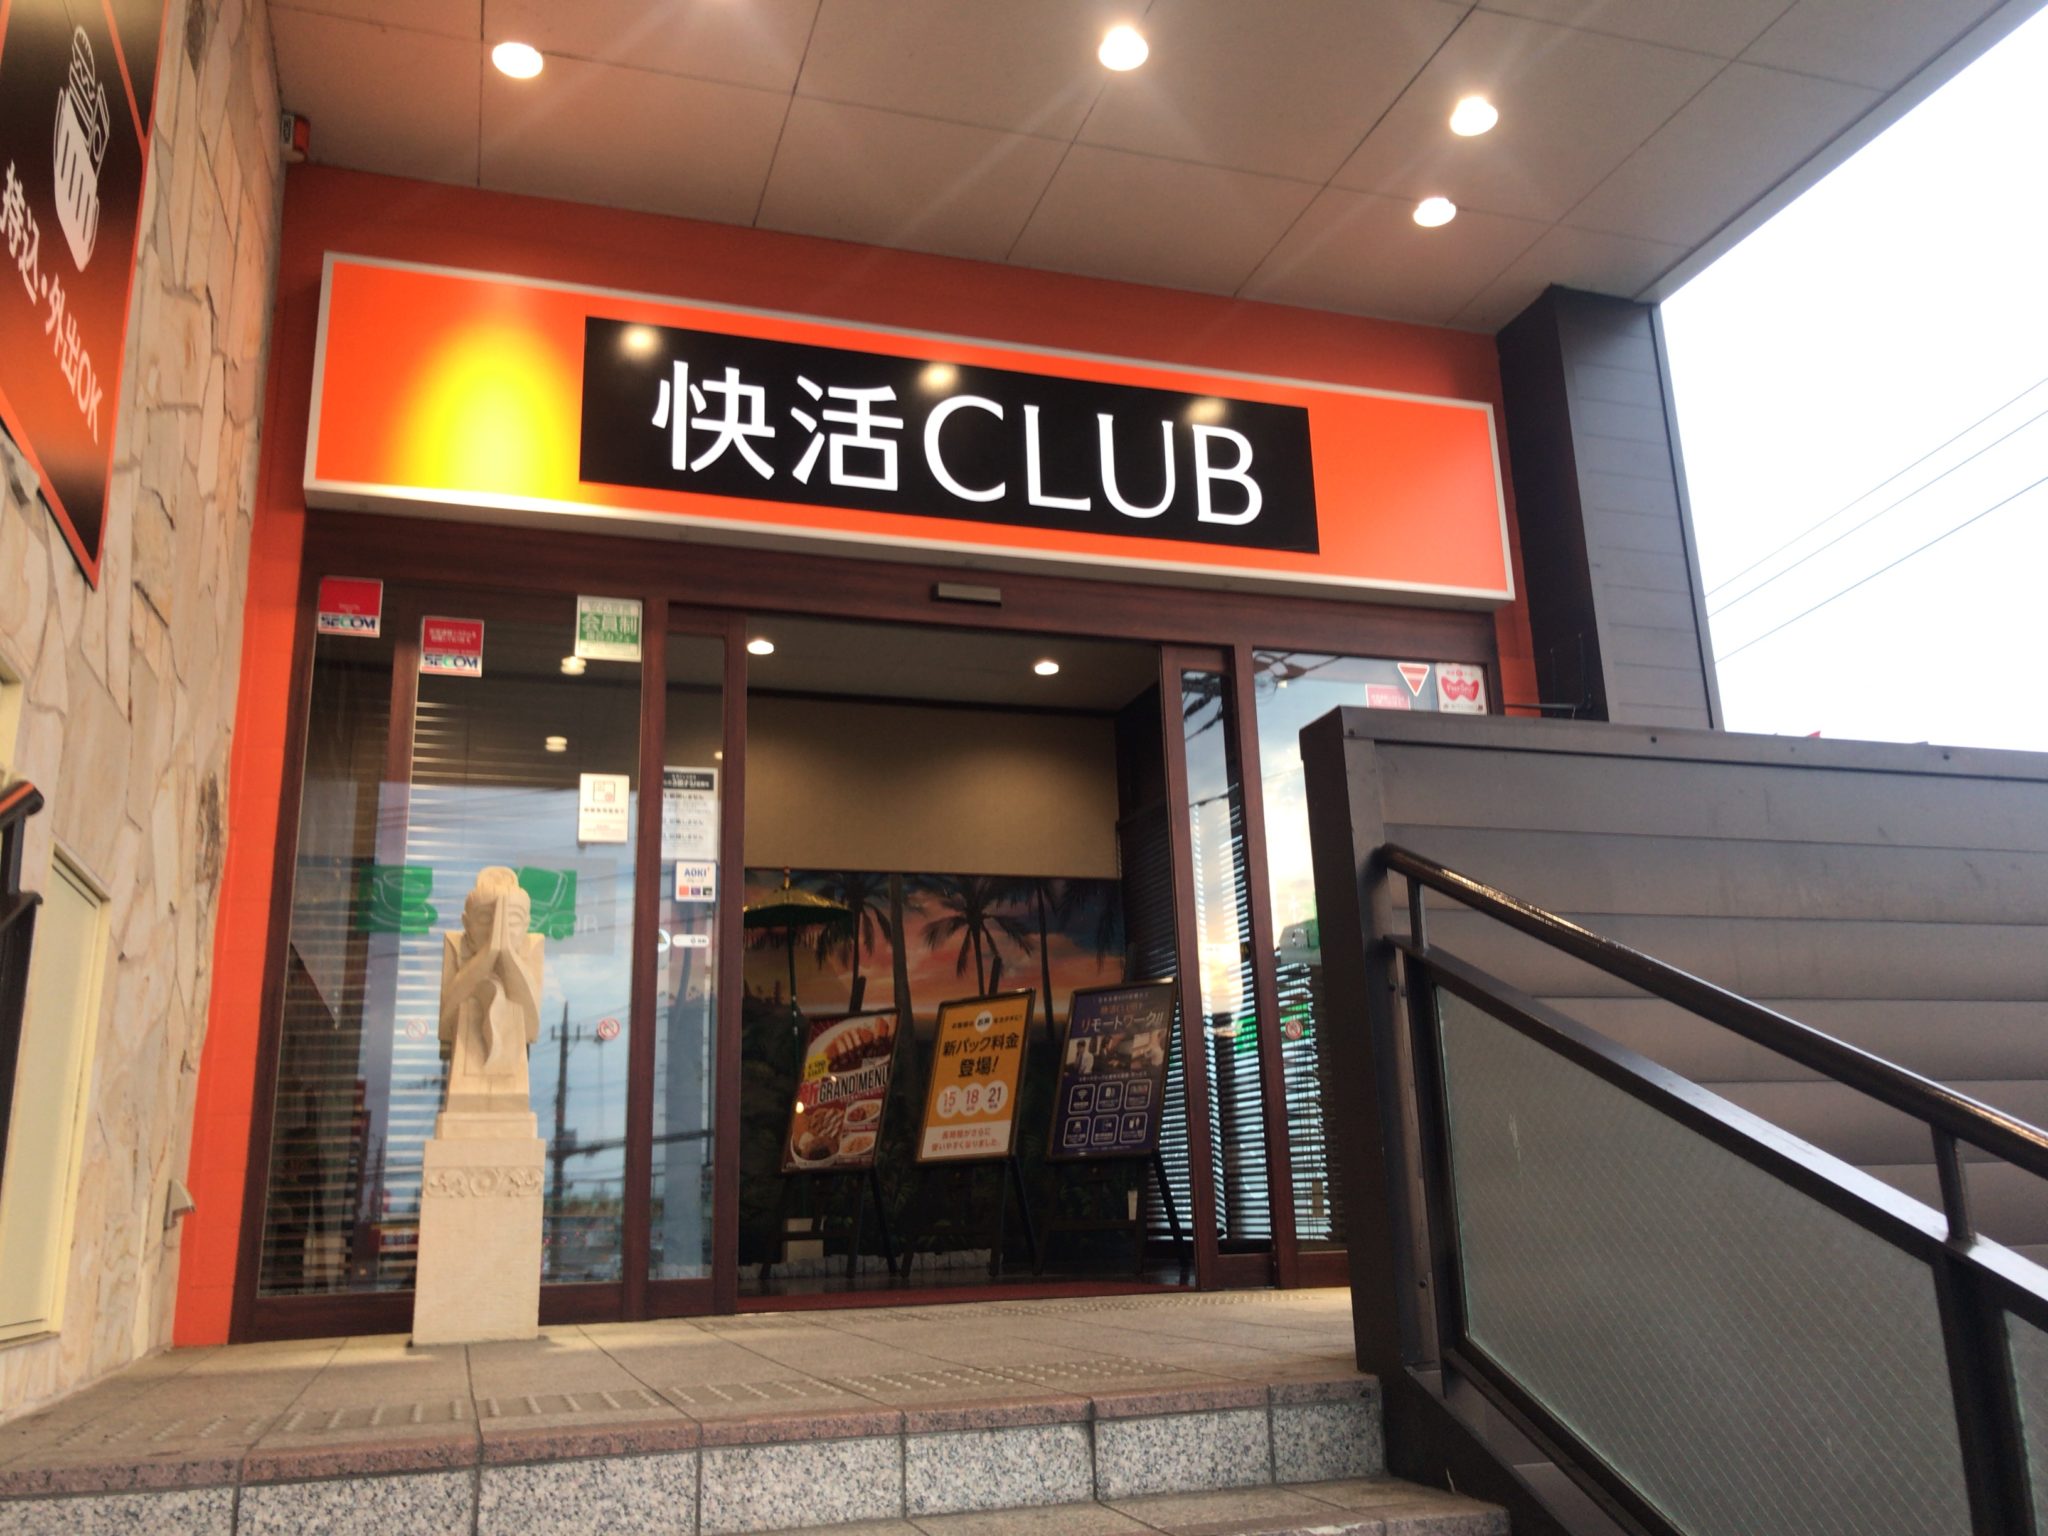 福居駅から徒歩18分 快活club 50号足利店をレポート 日本全国のネカフェ 漫画喫茶マップのヒマップ